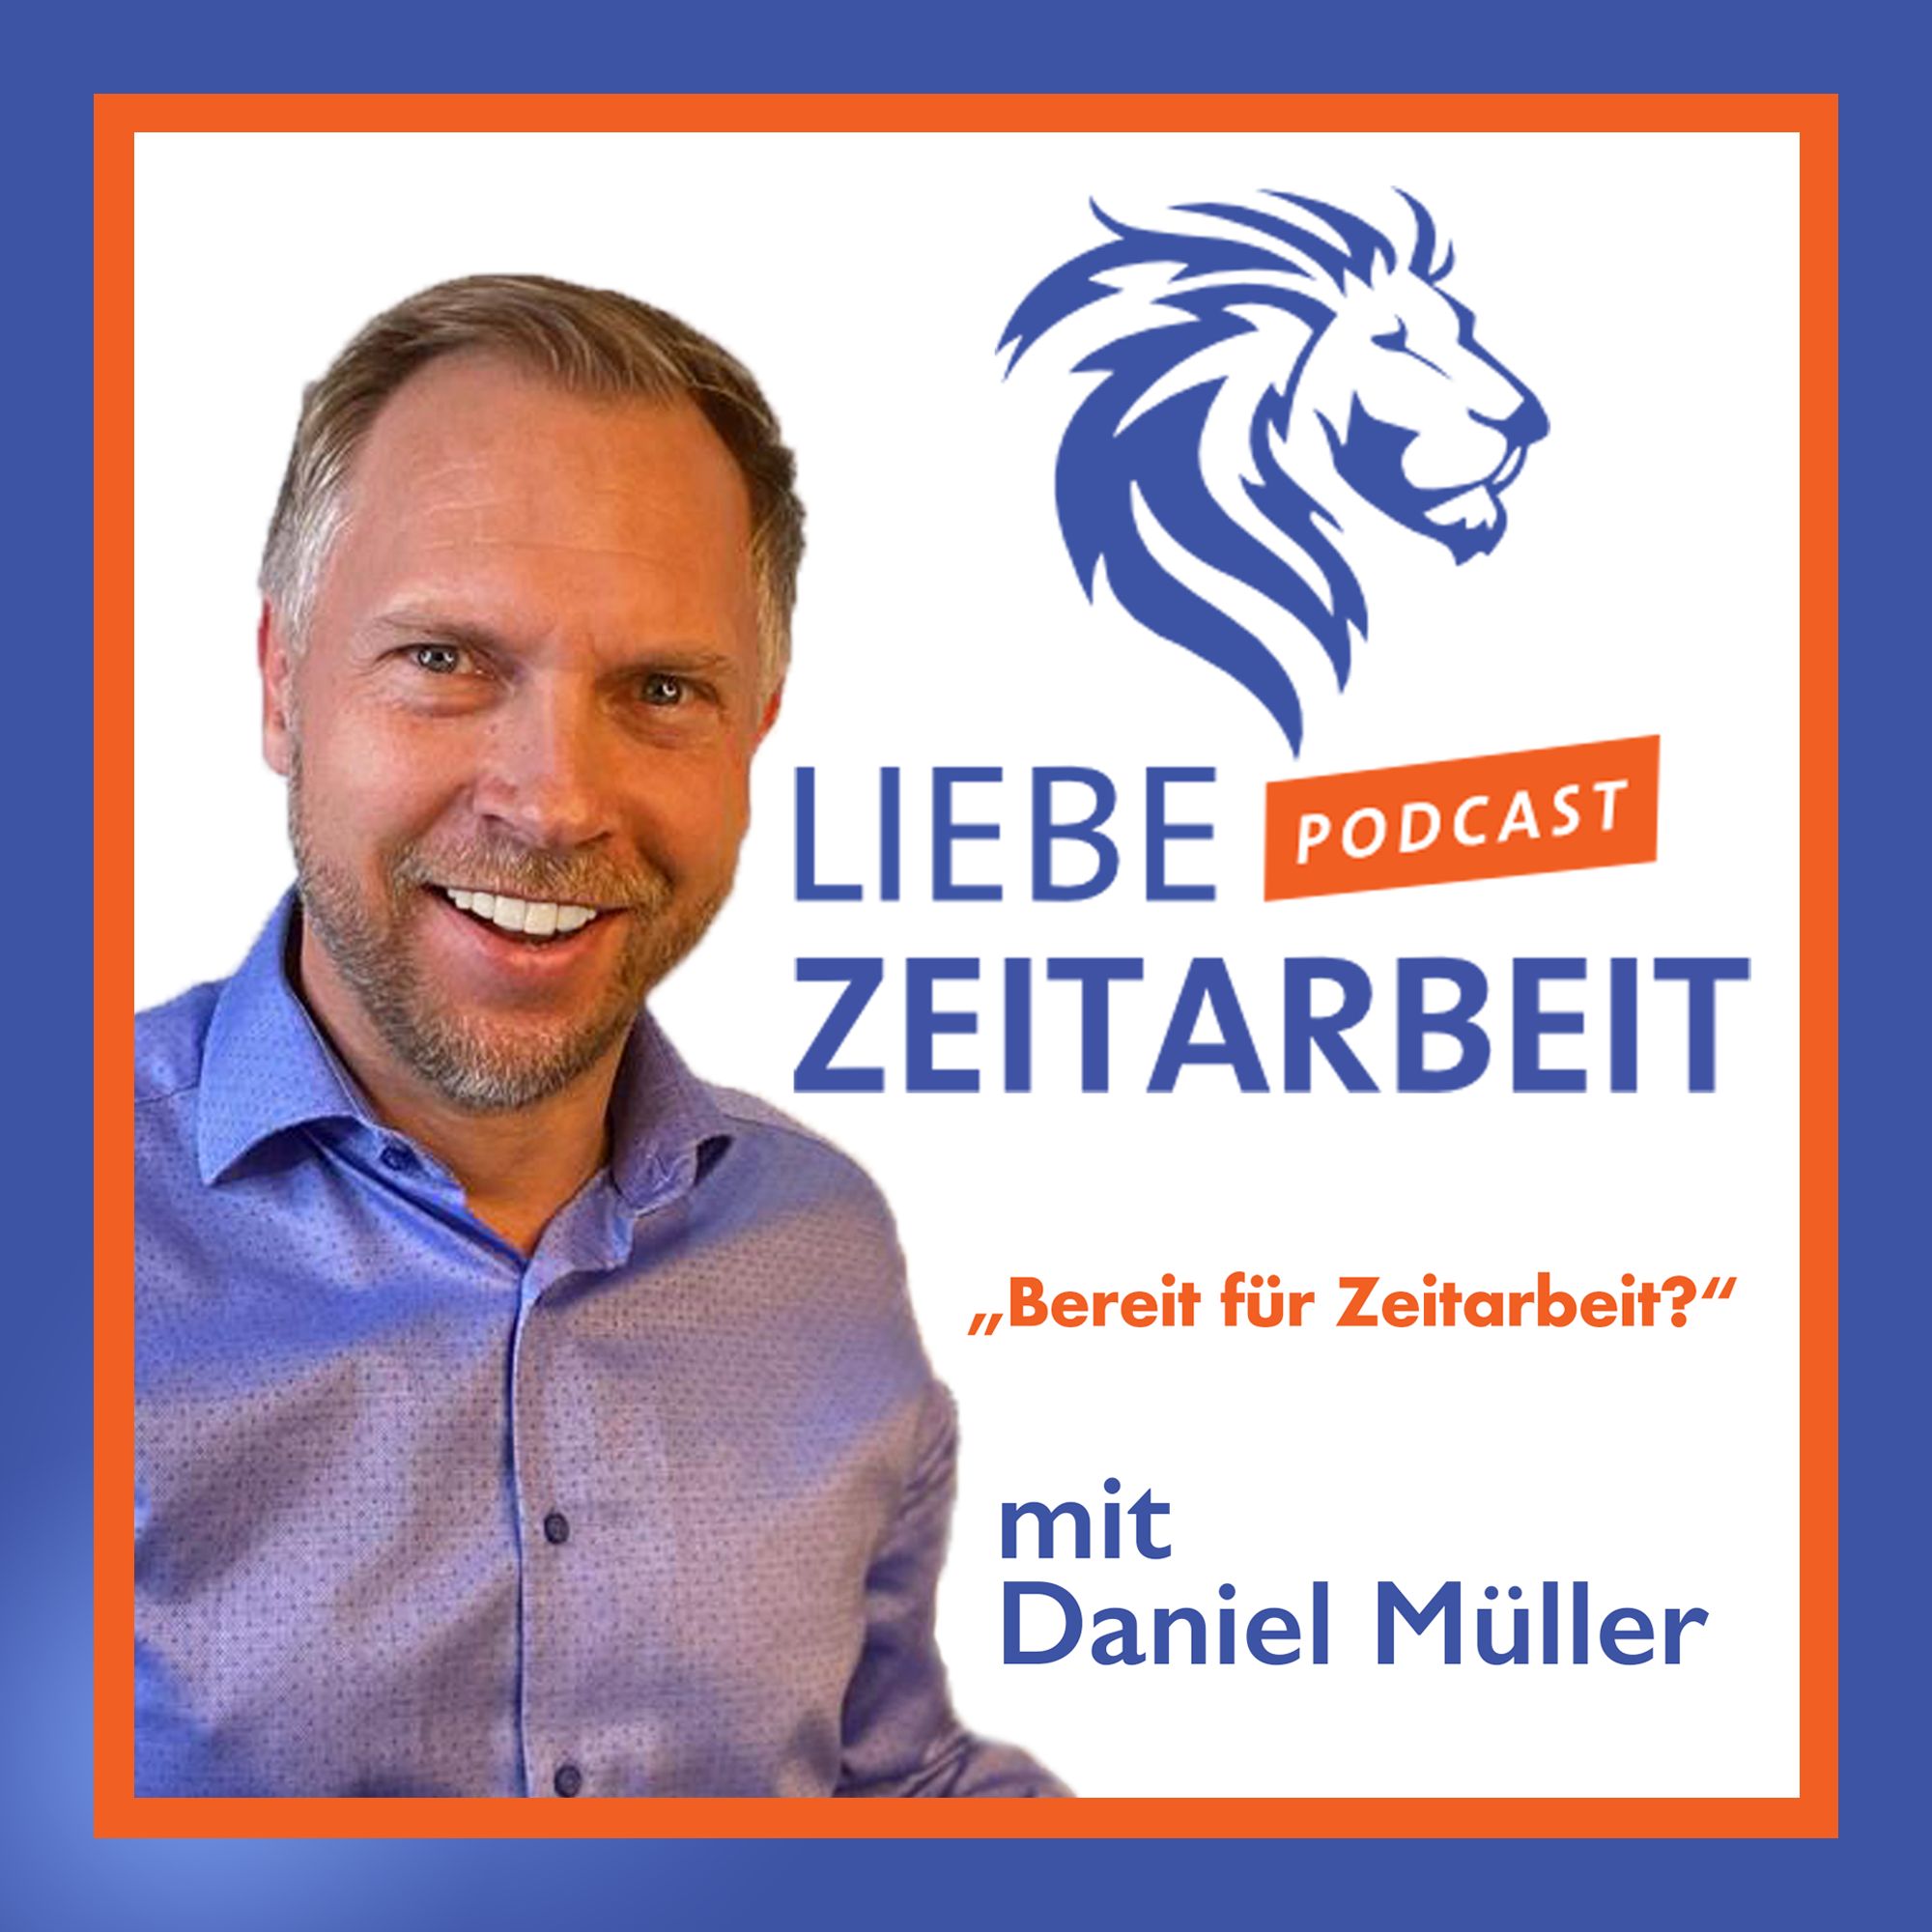 Daniel Müller von Liebe Zeitarbeit